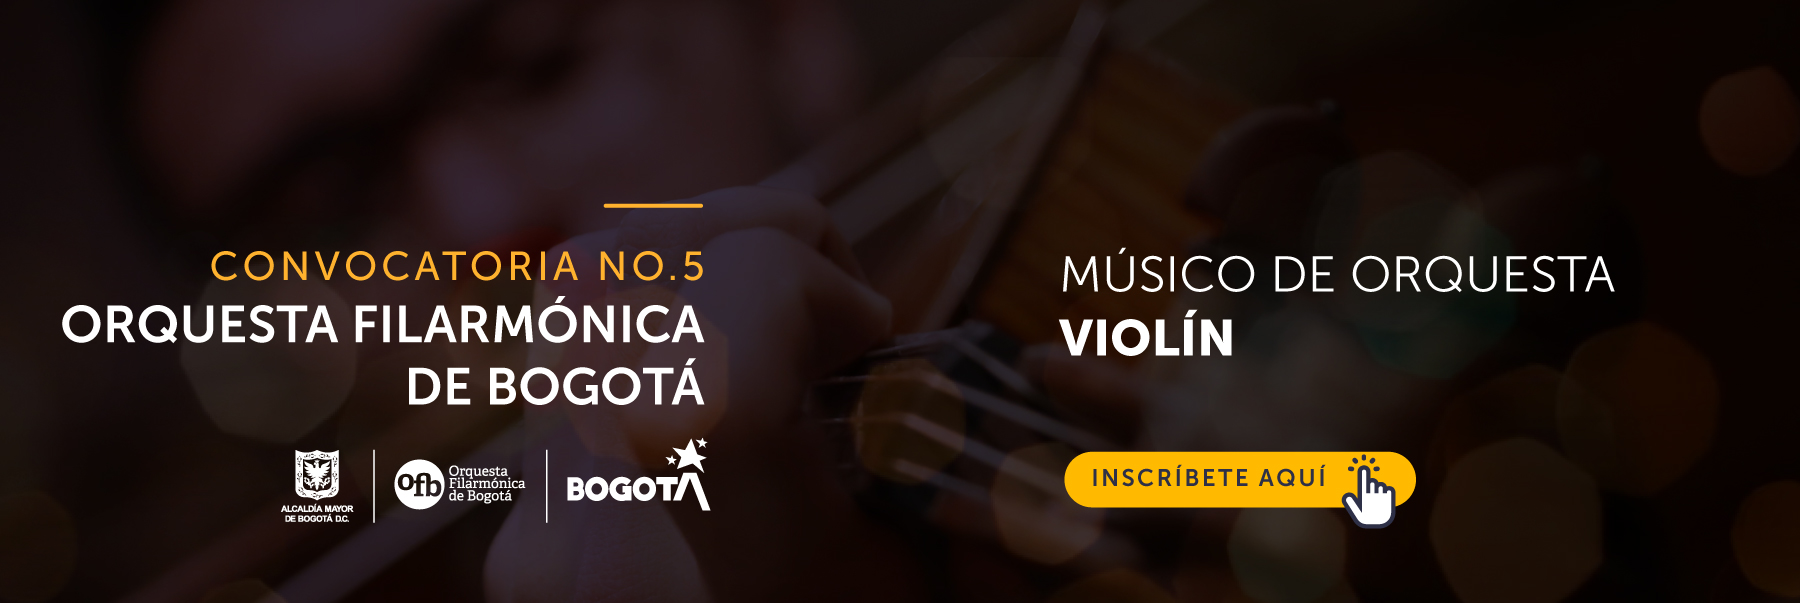 Imagen tipo banner invitando a participar en la Convocatoria No 5 para músico de orquesta Violín